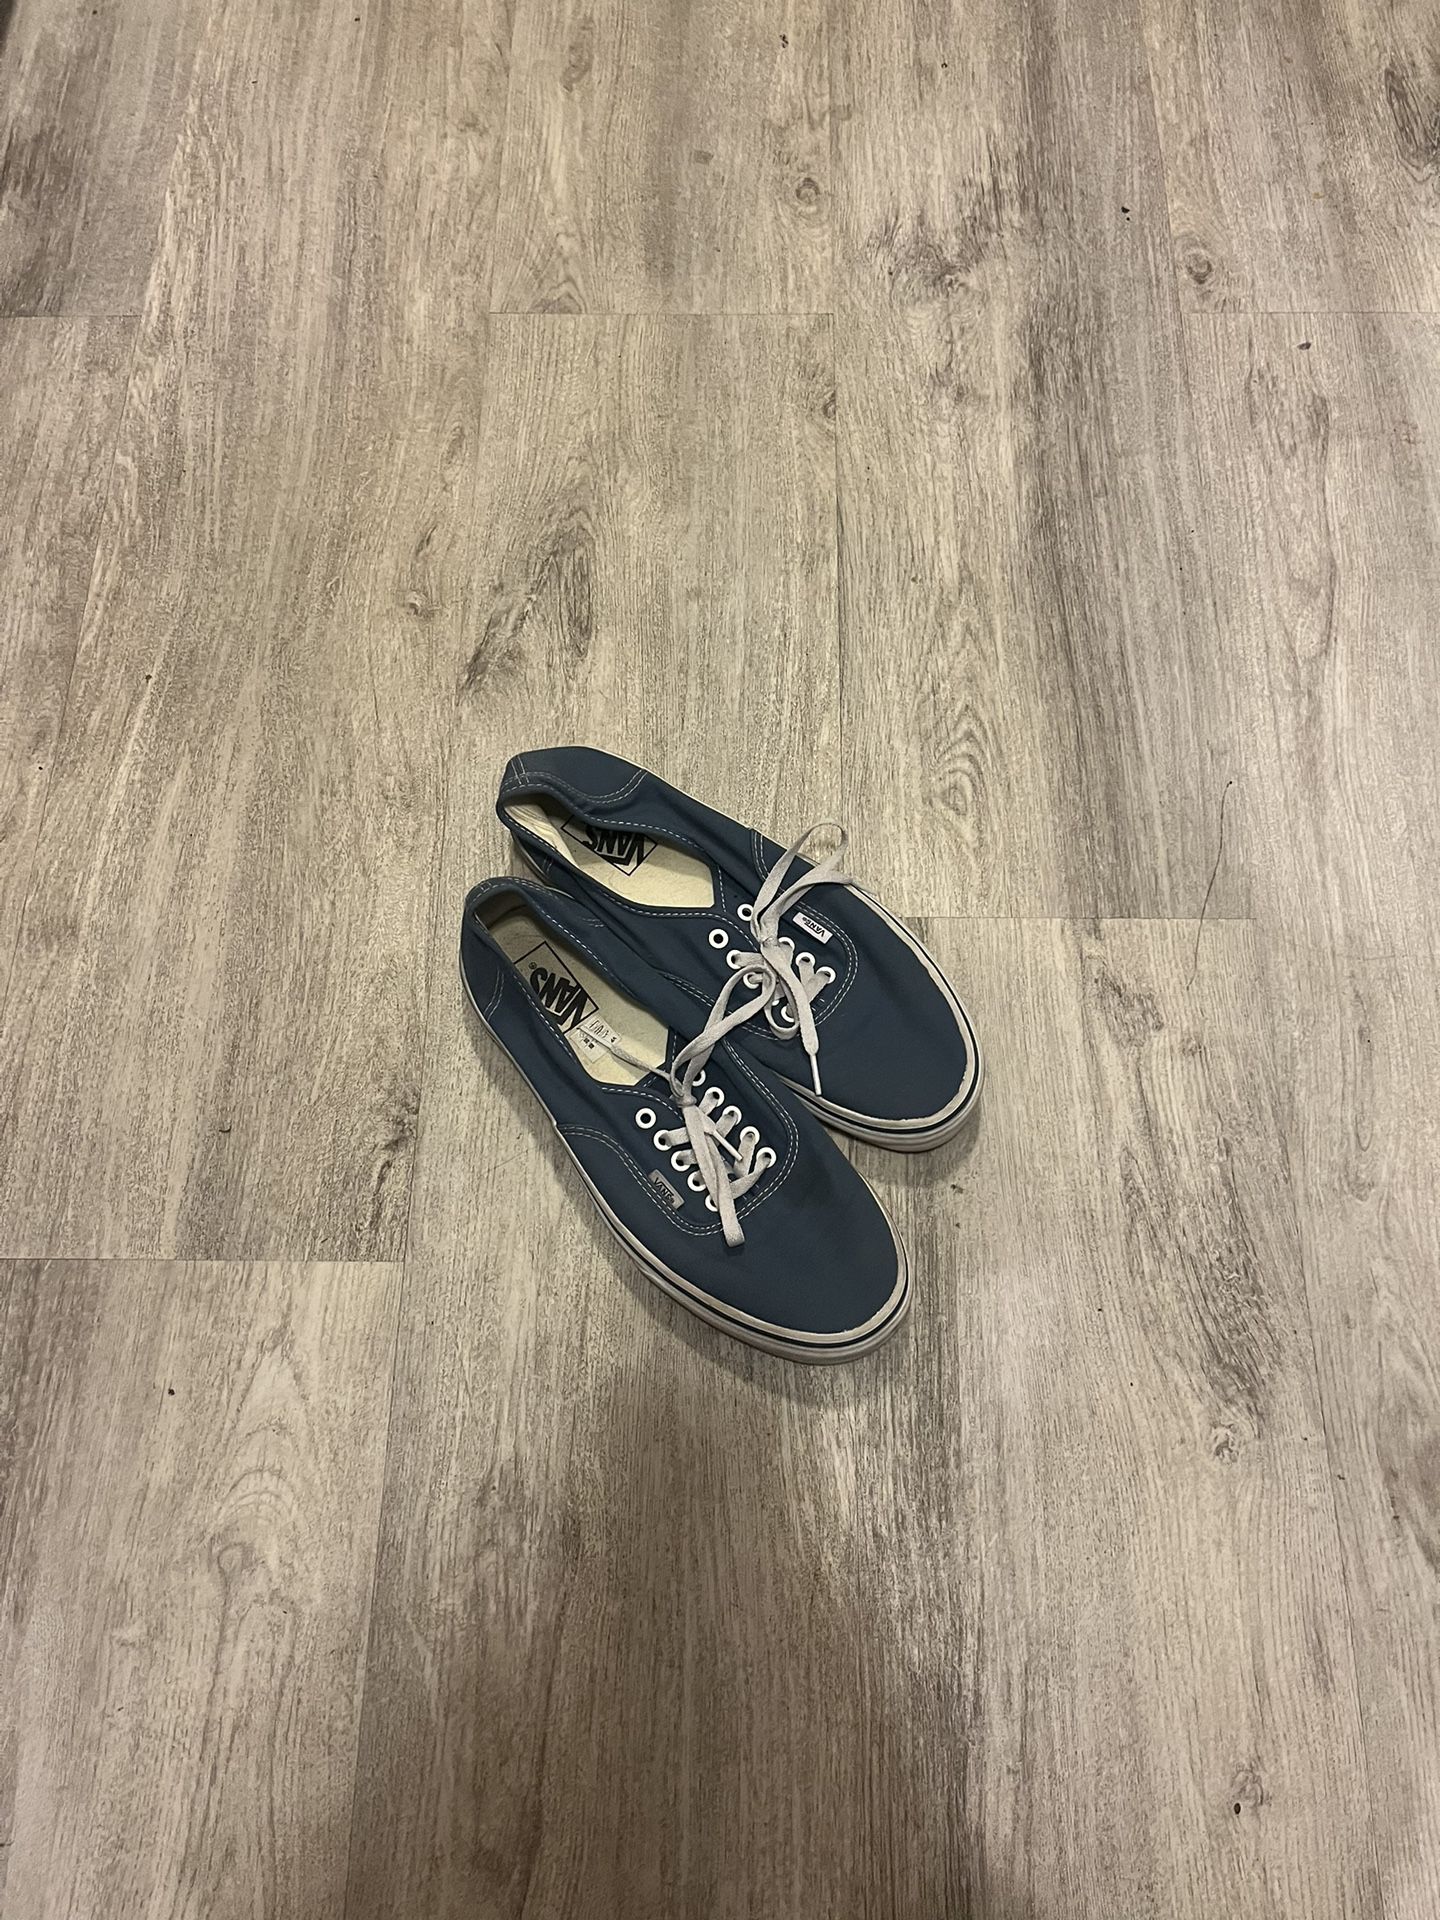 Blue Vans Shoes - Size 11